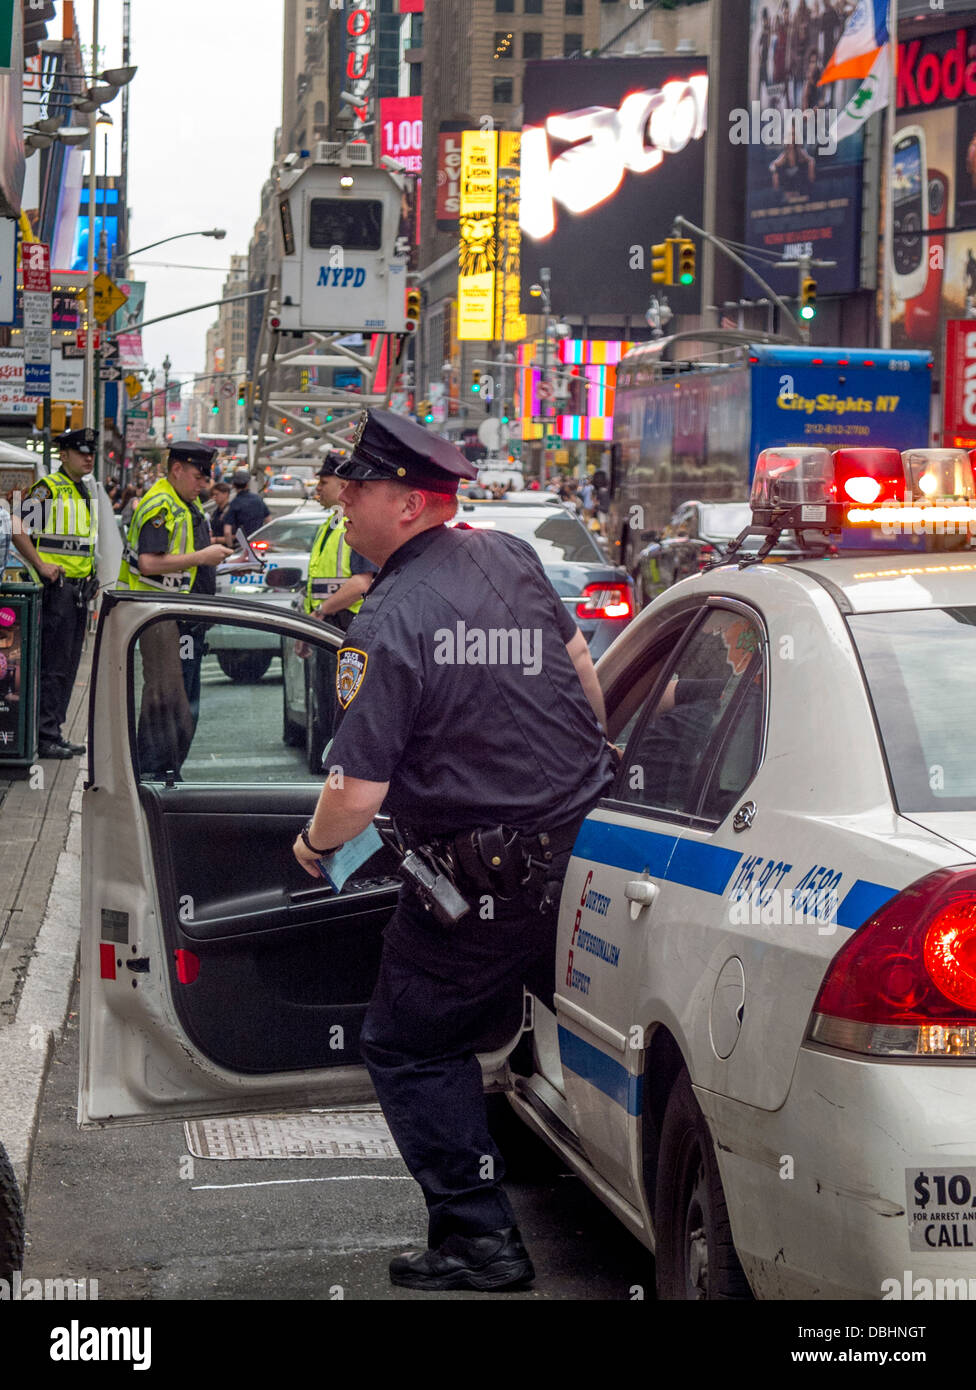 Contestar a una llamada, un policía se precipita desde su patrulla en Times Square de Nueva York Foto de stock